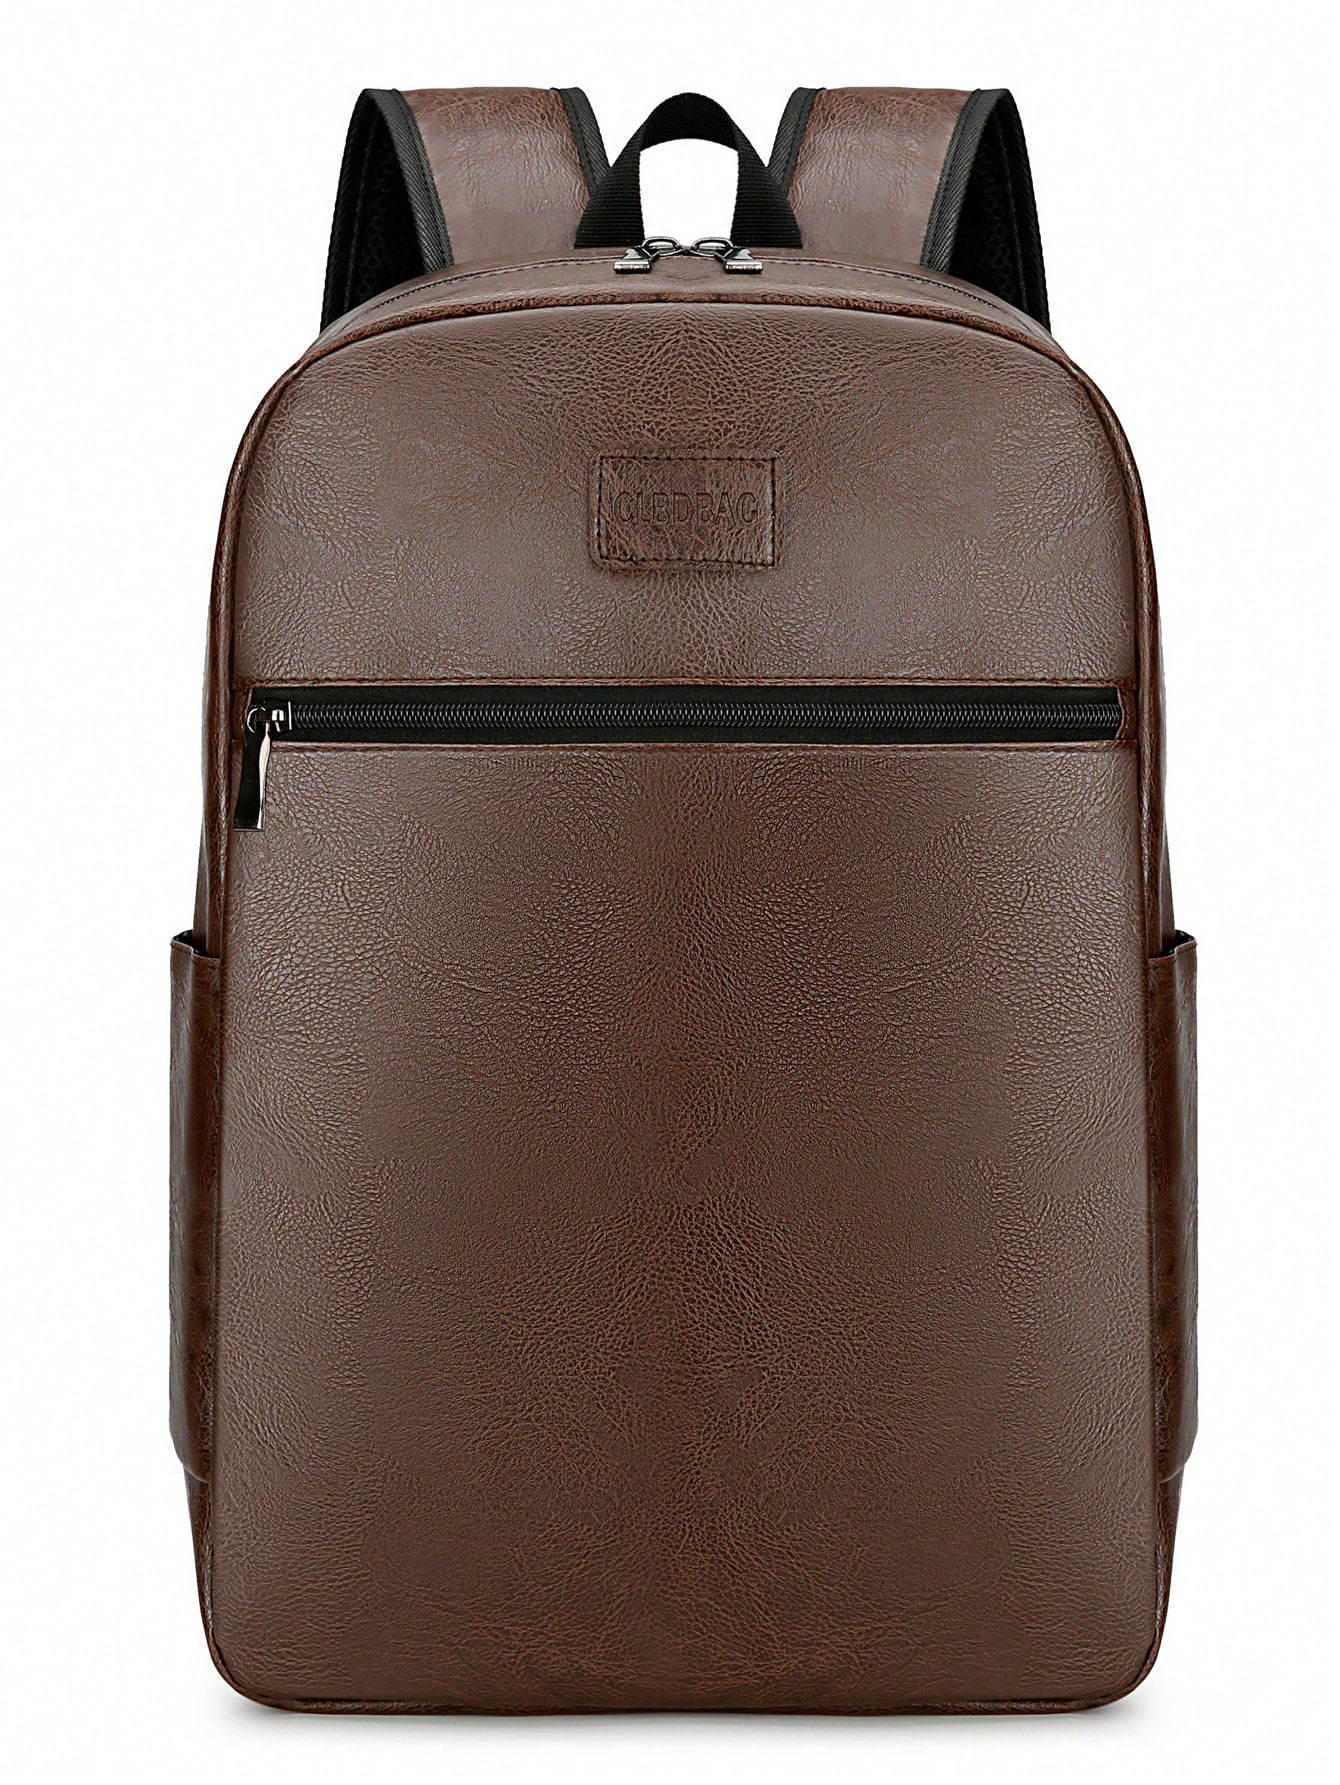 Винтажный мужской рюкзак из искусственной кожи, коричневый винтажный противоугонный рюкзак коричневый